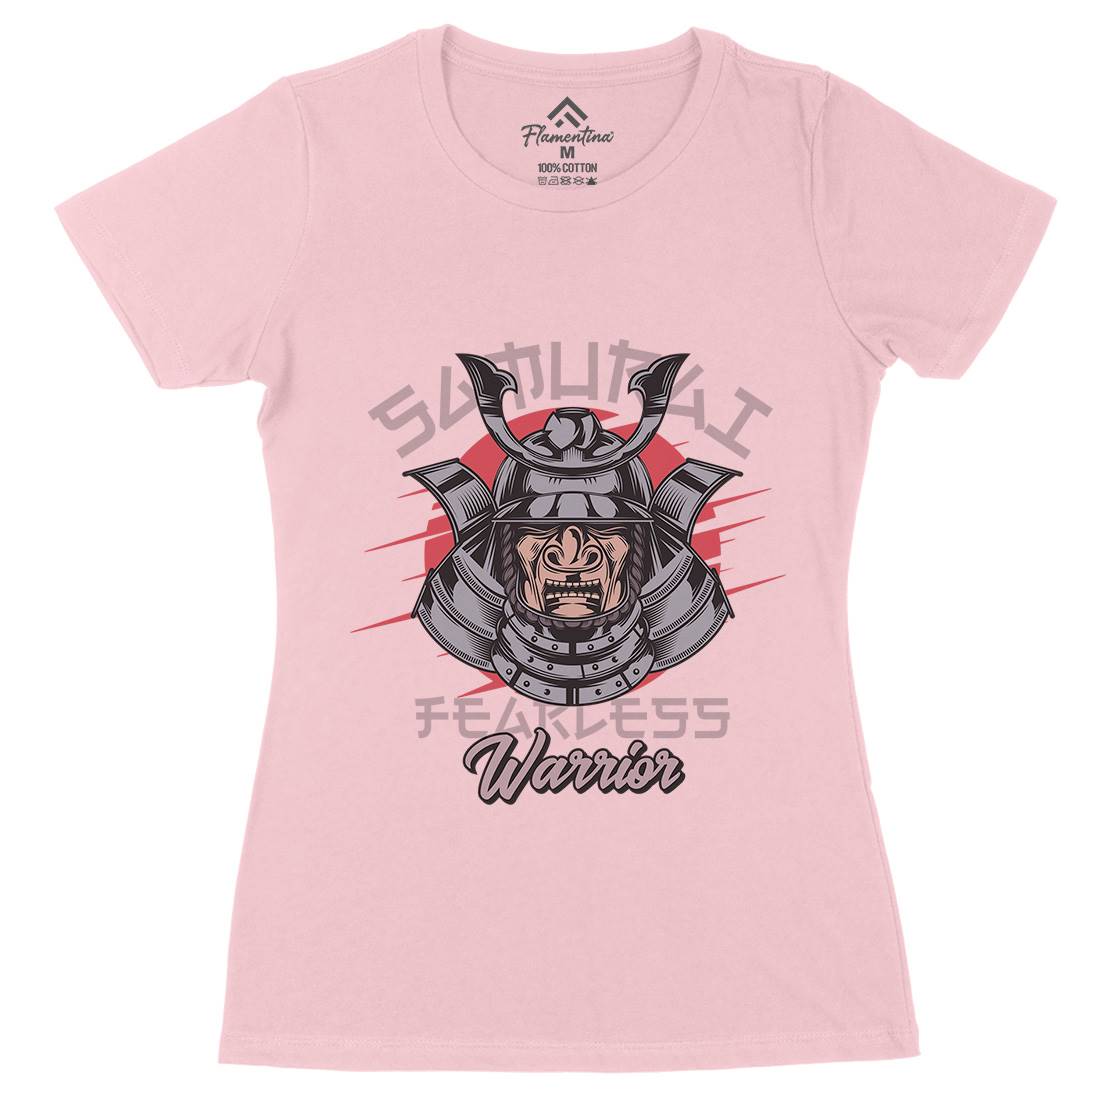 Samurai Womens Organic Crew Neck T-Shirt Warriors C884